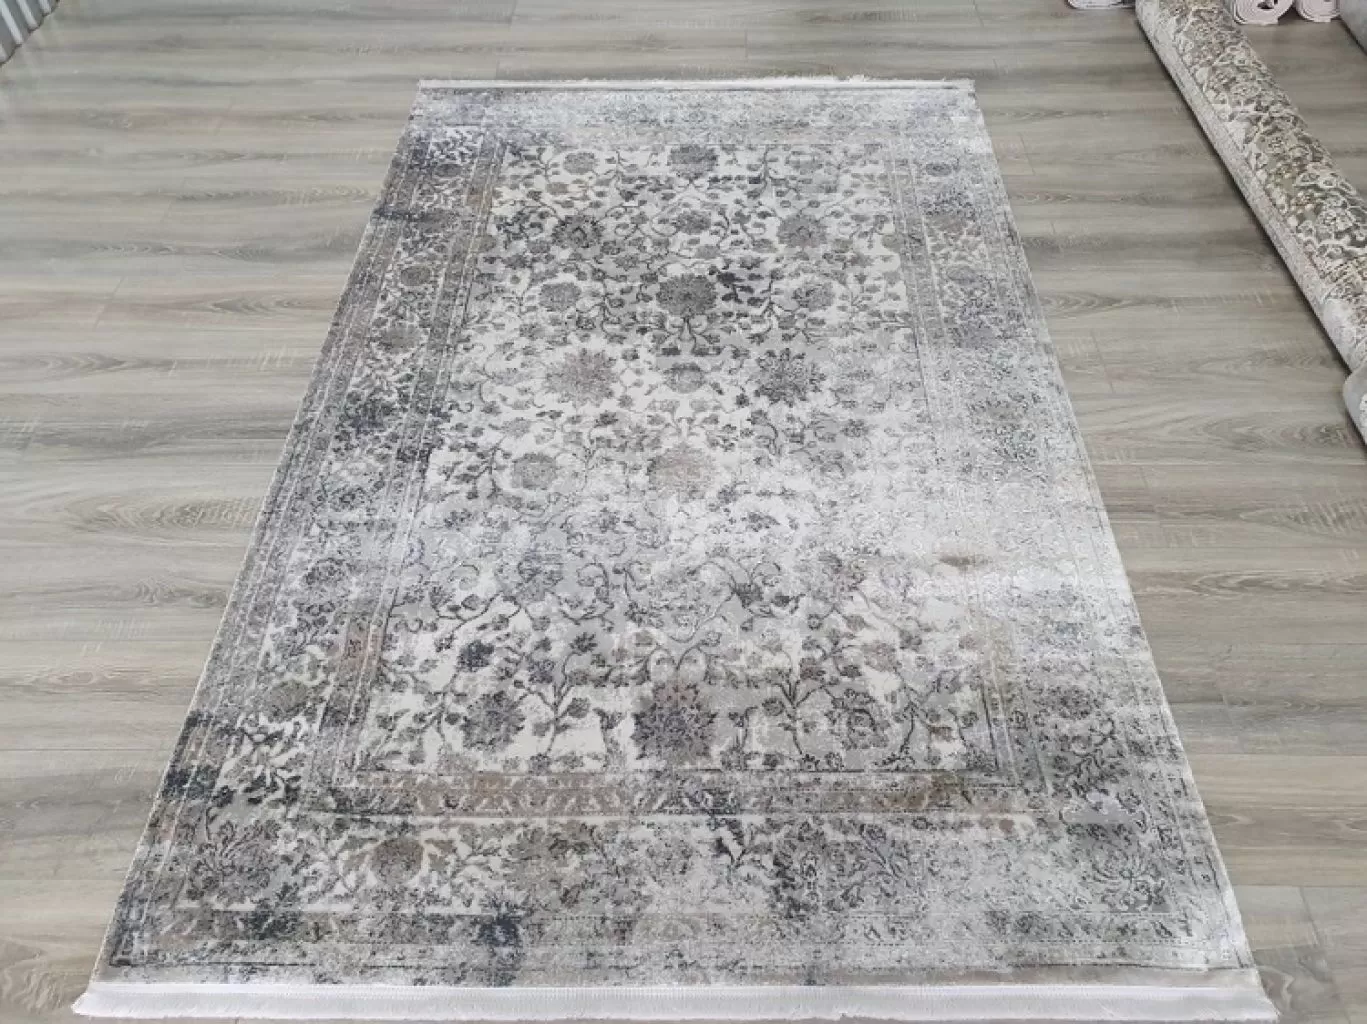 новое поступление на склад Шелковый Путь в Волгограде - коллекция премиальных турецких ковров IMPRESIVE